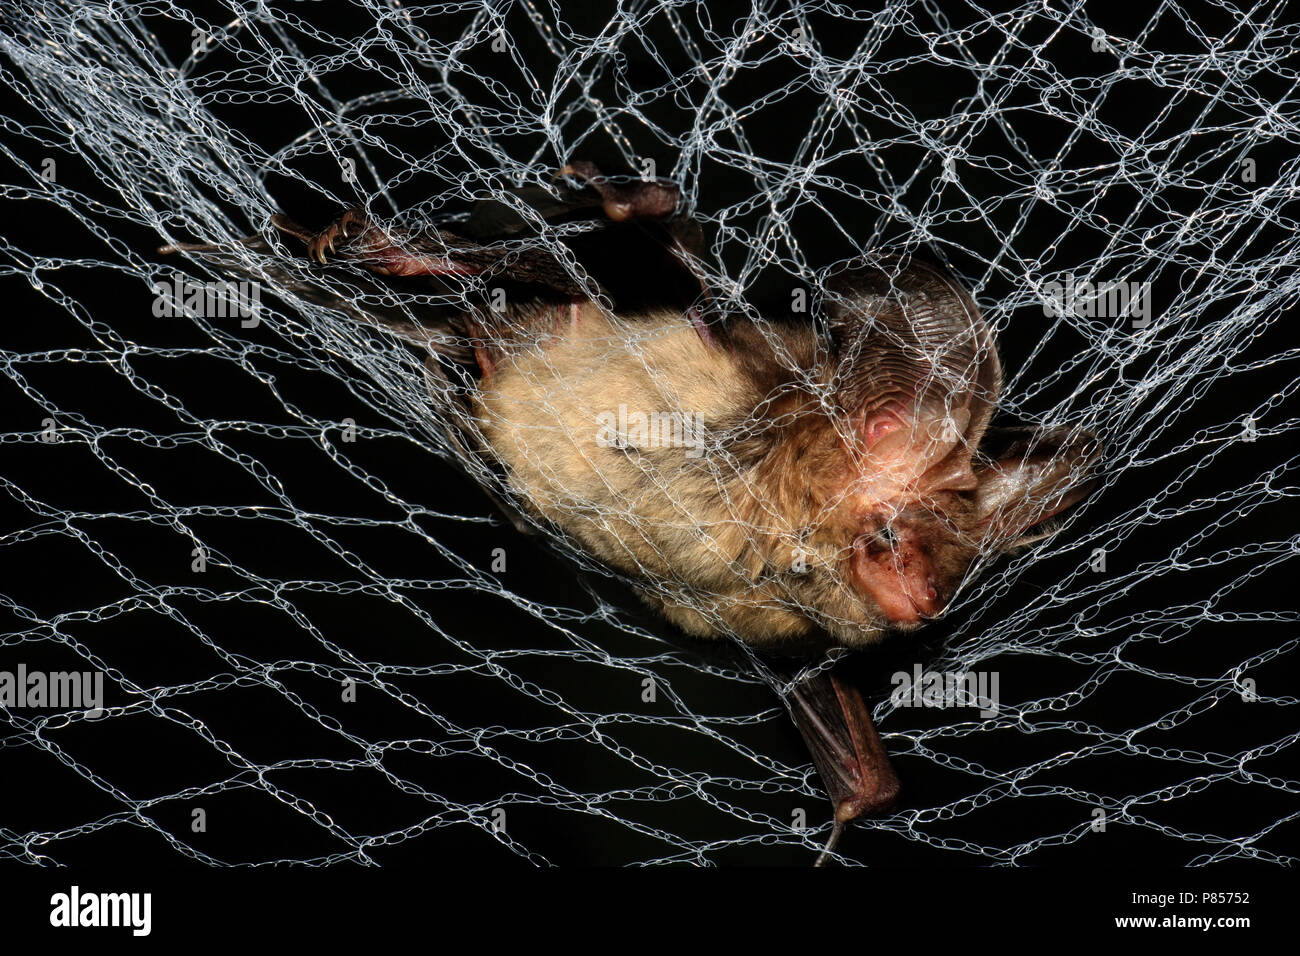 Dans Grootoorvleermuis gevangen een net ; Brown Long-eared Bat pris dans un filet Banque D'Images